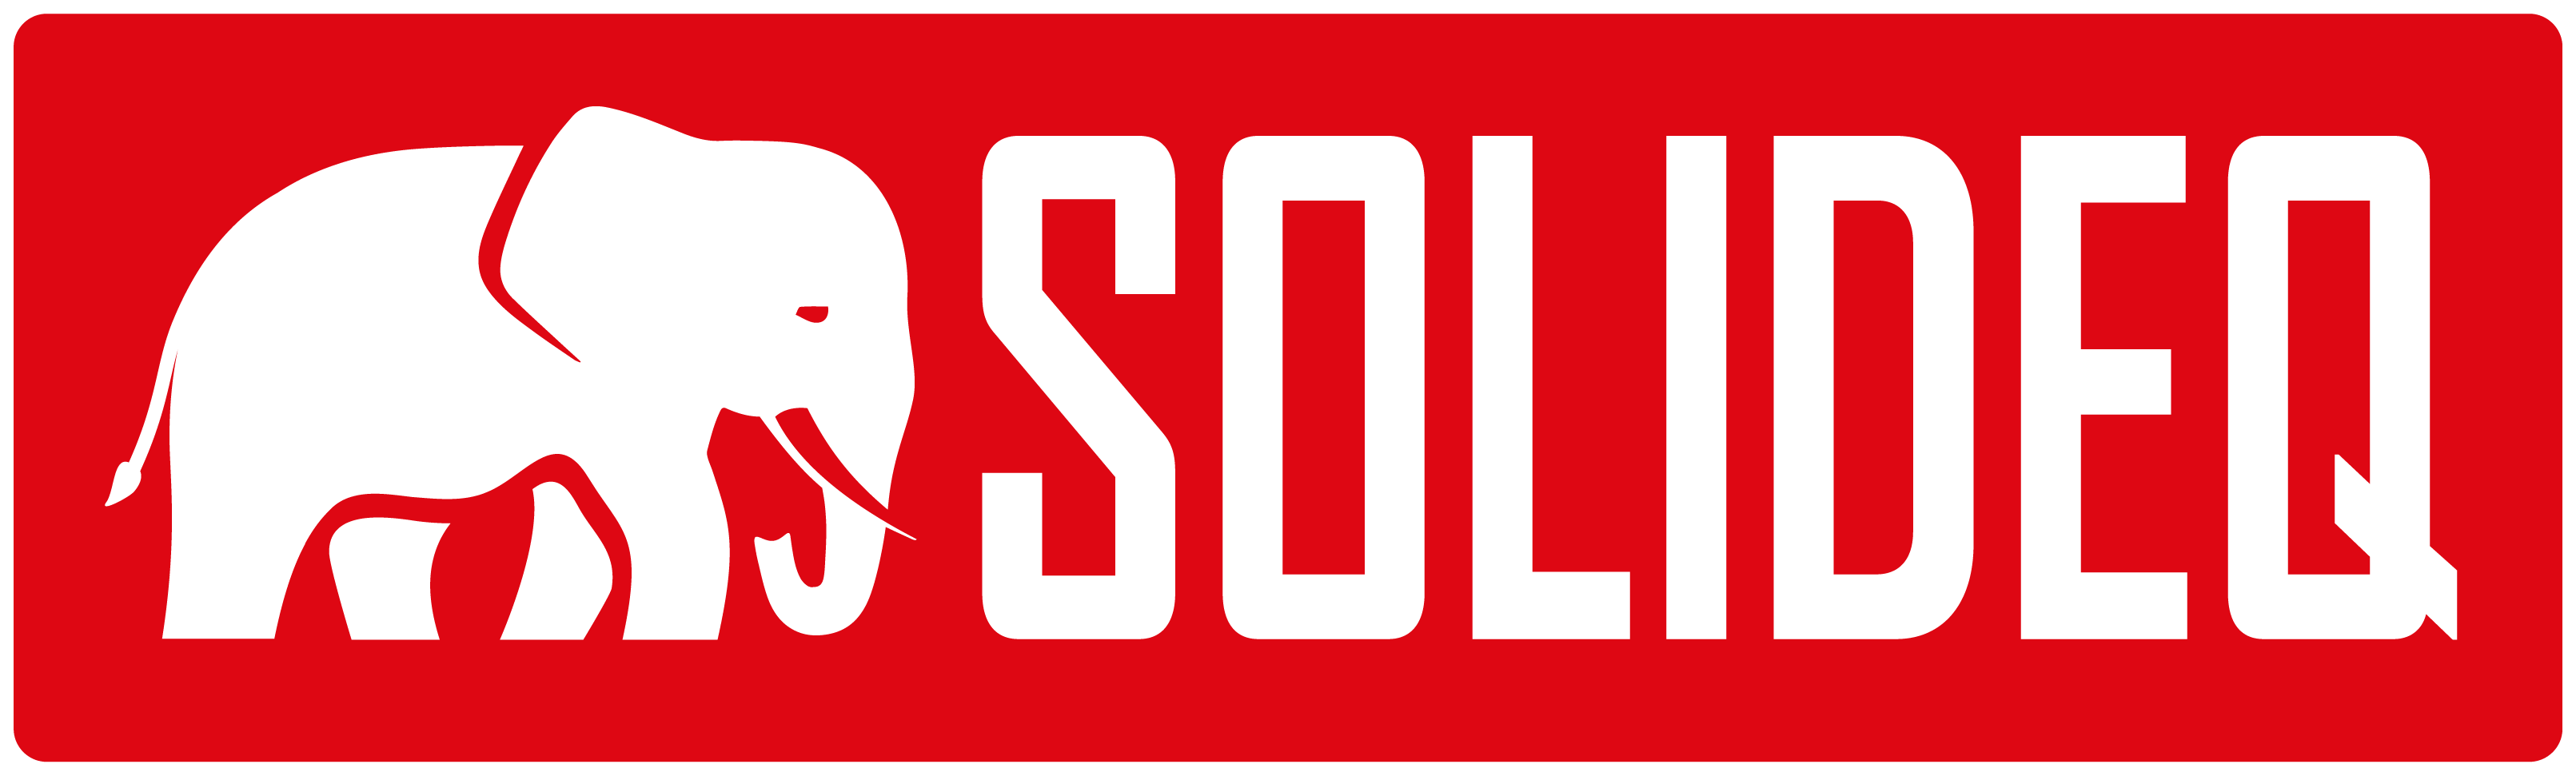 Solideq logo